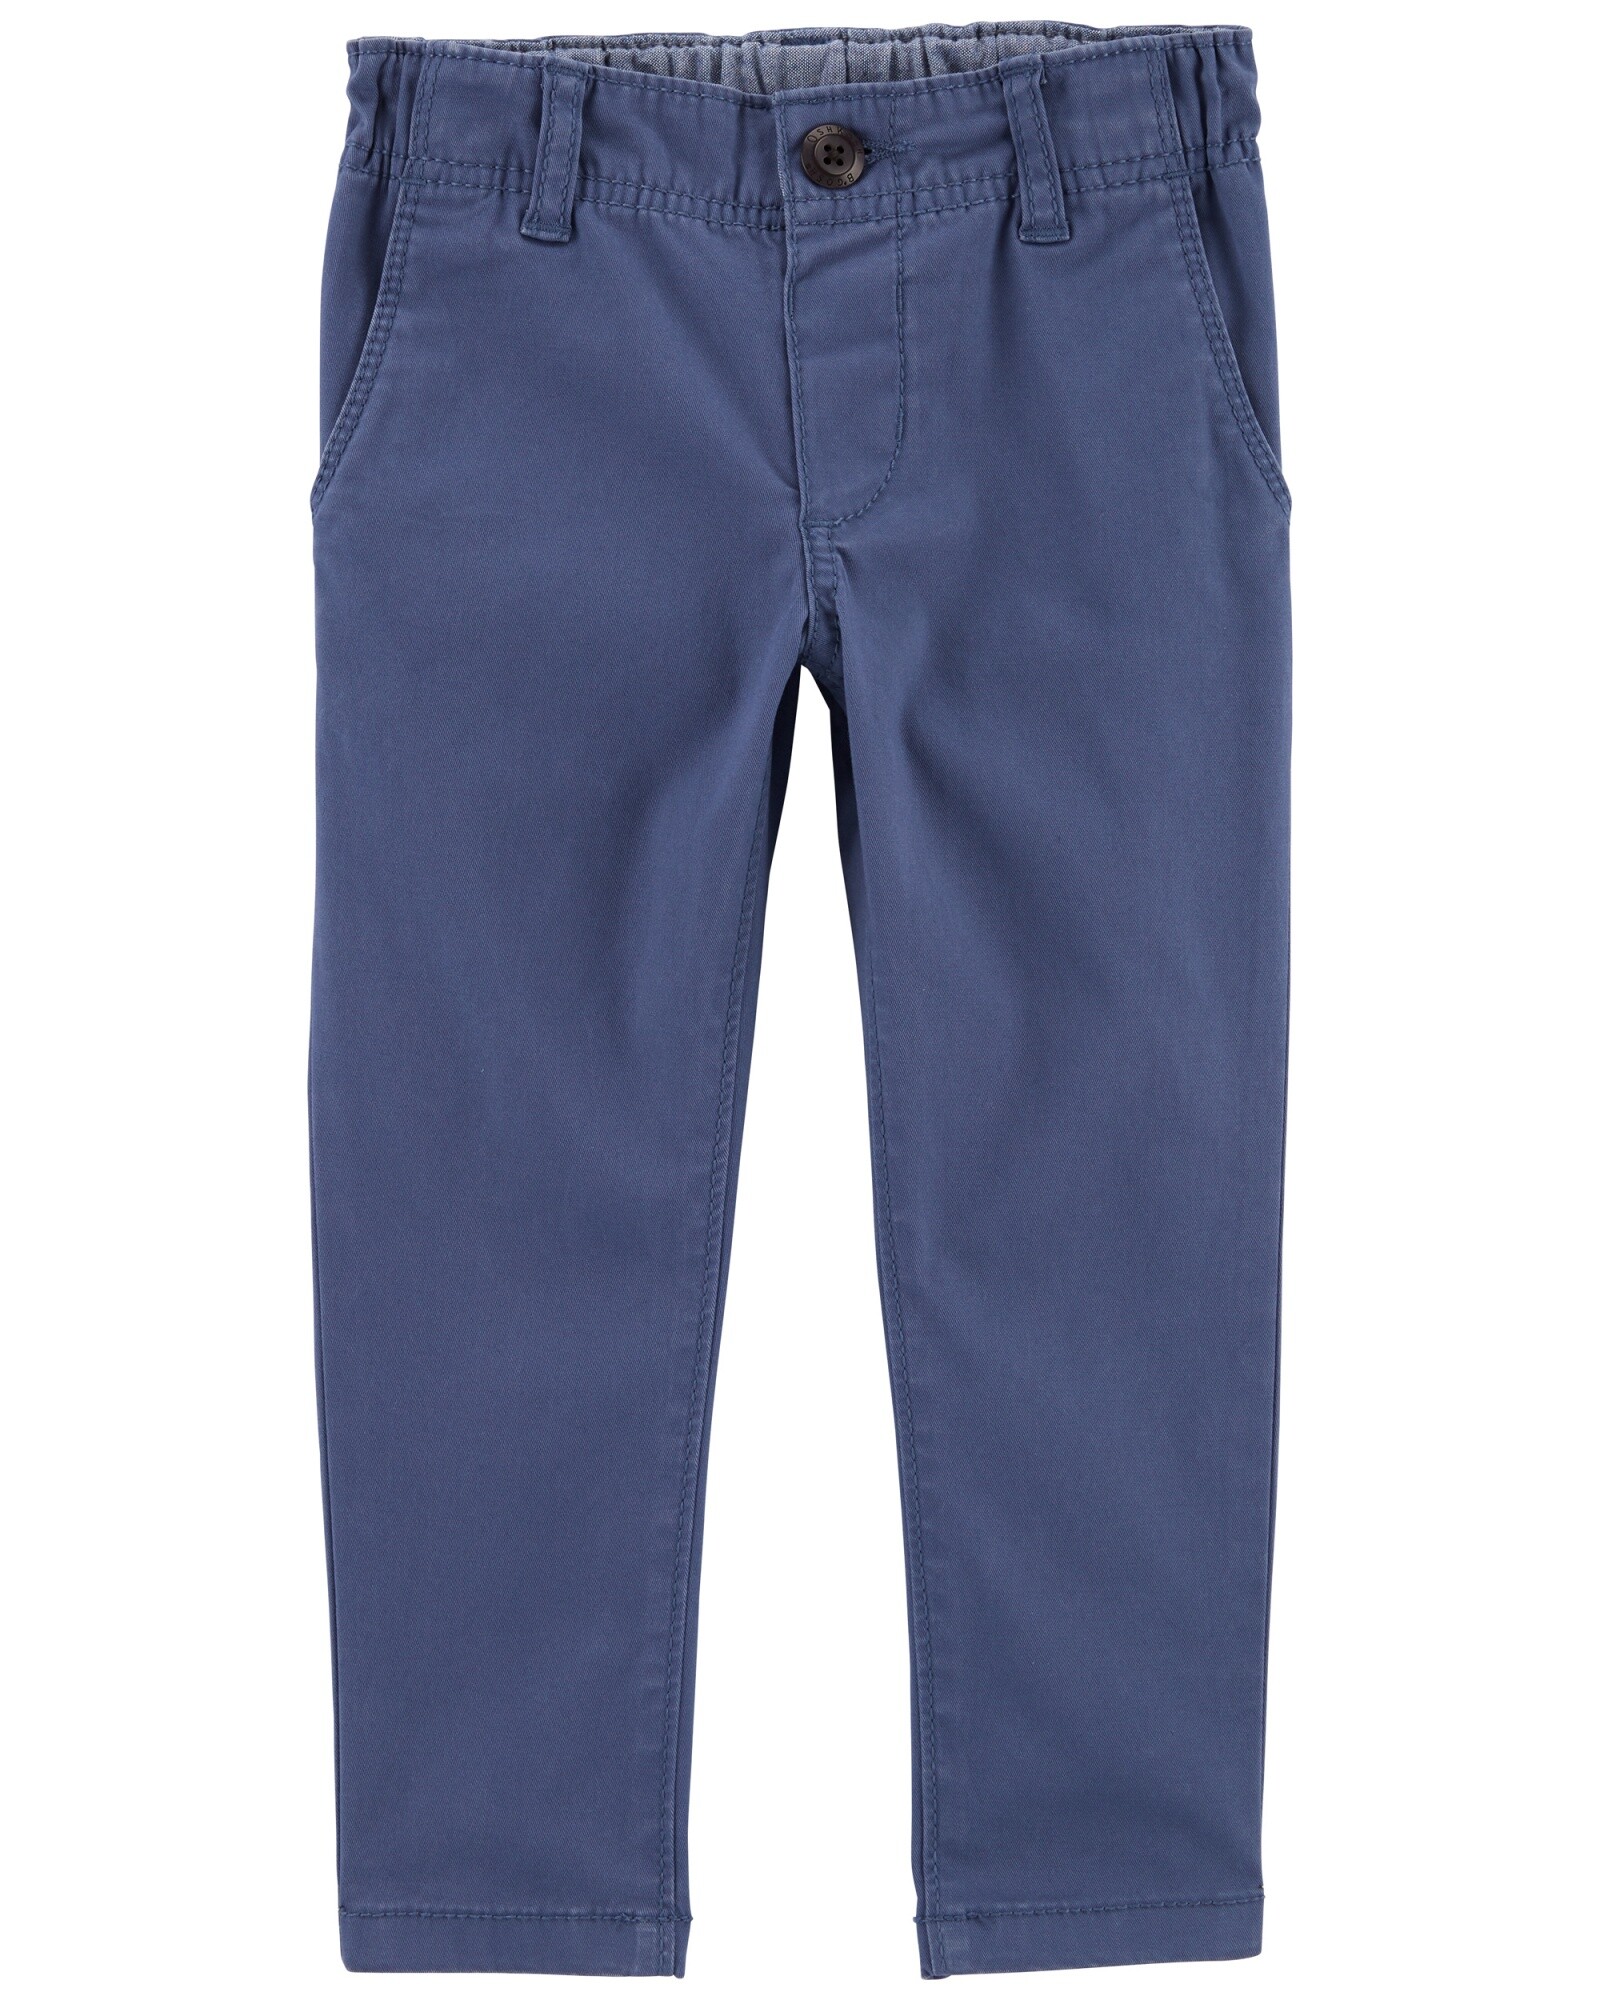 Pantalón de algodón, ajustado, azul. Talles 2-5T Sin color